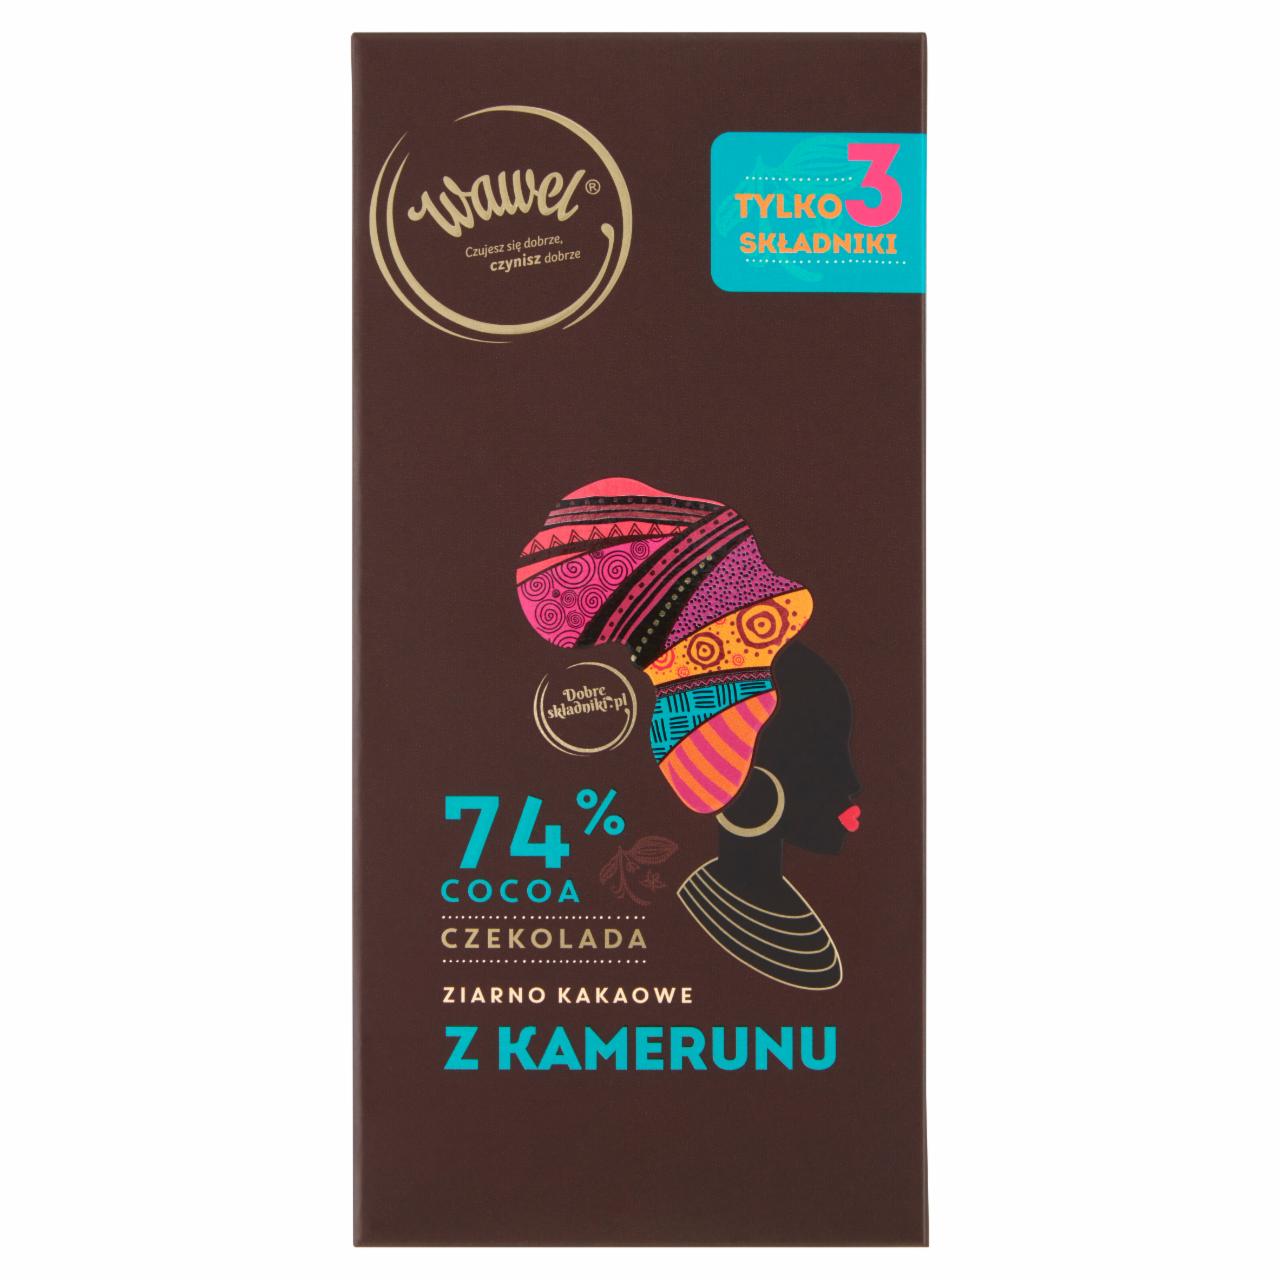 Zdjęcia - Wawel Czekolada 74% cocoa ziarno kakaowe z Kamerunu 100 g